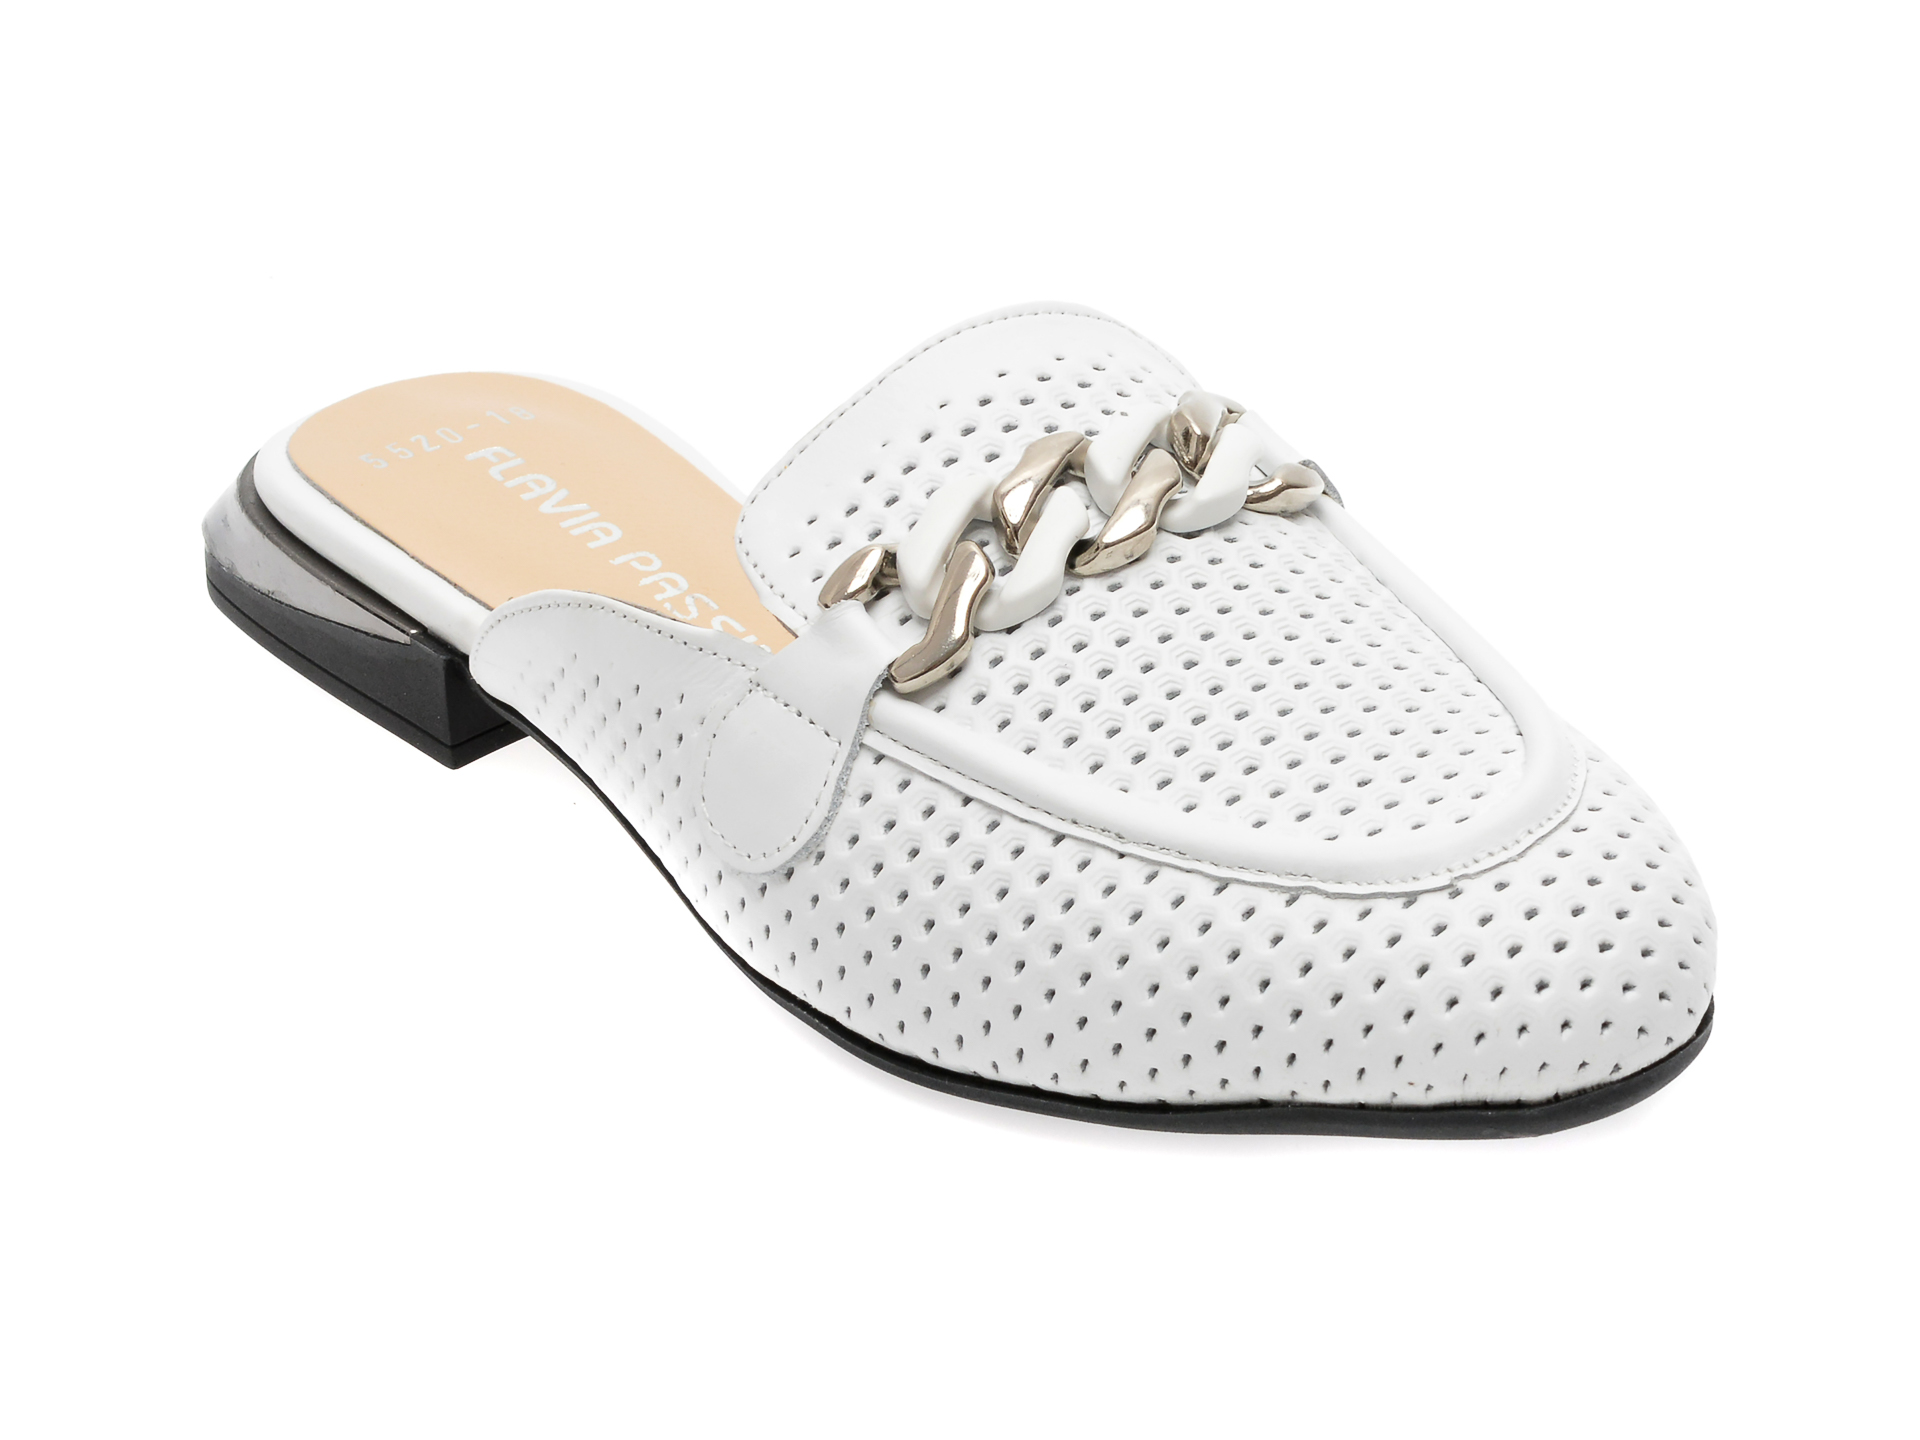 Papuci FLAVIA PASSINI albi, 1255520, din piele naturala